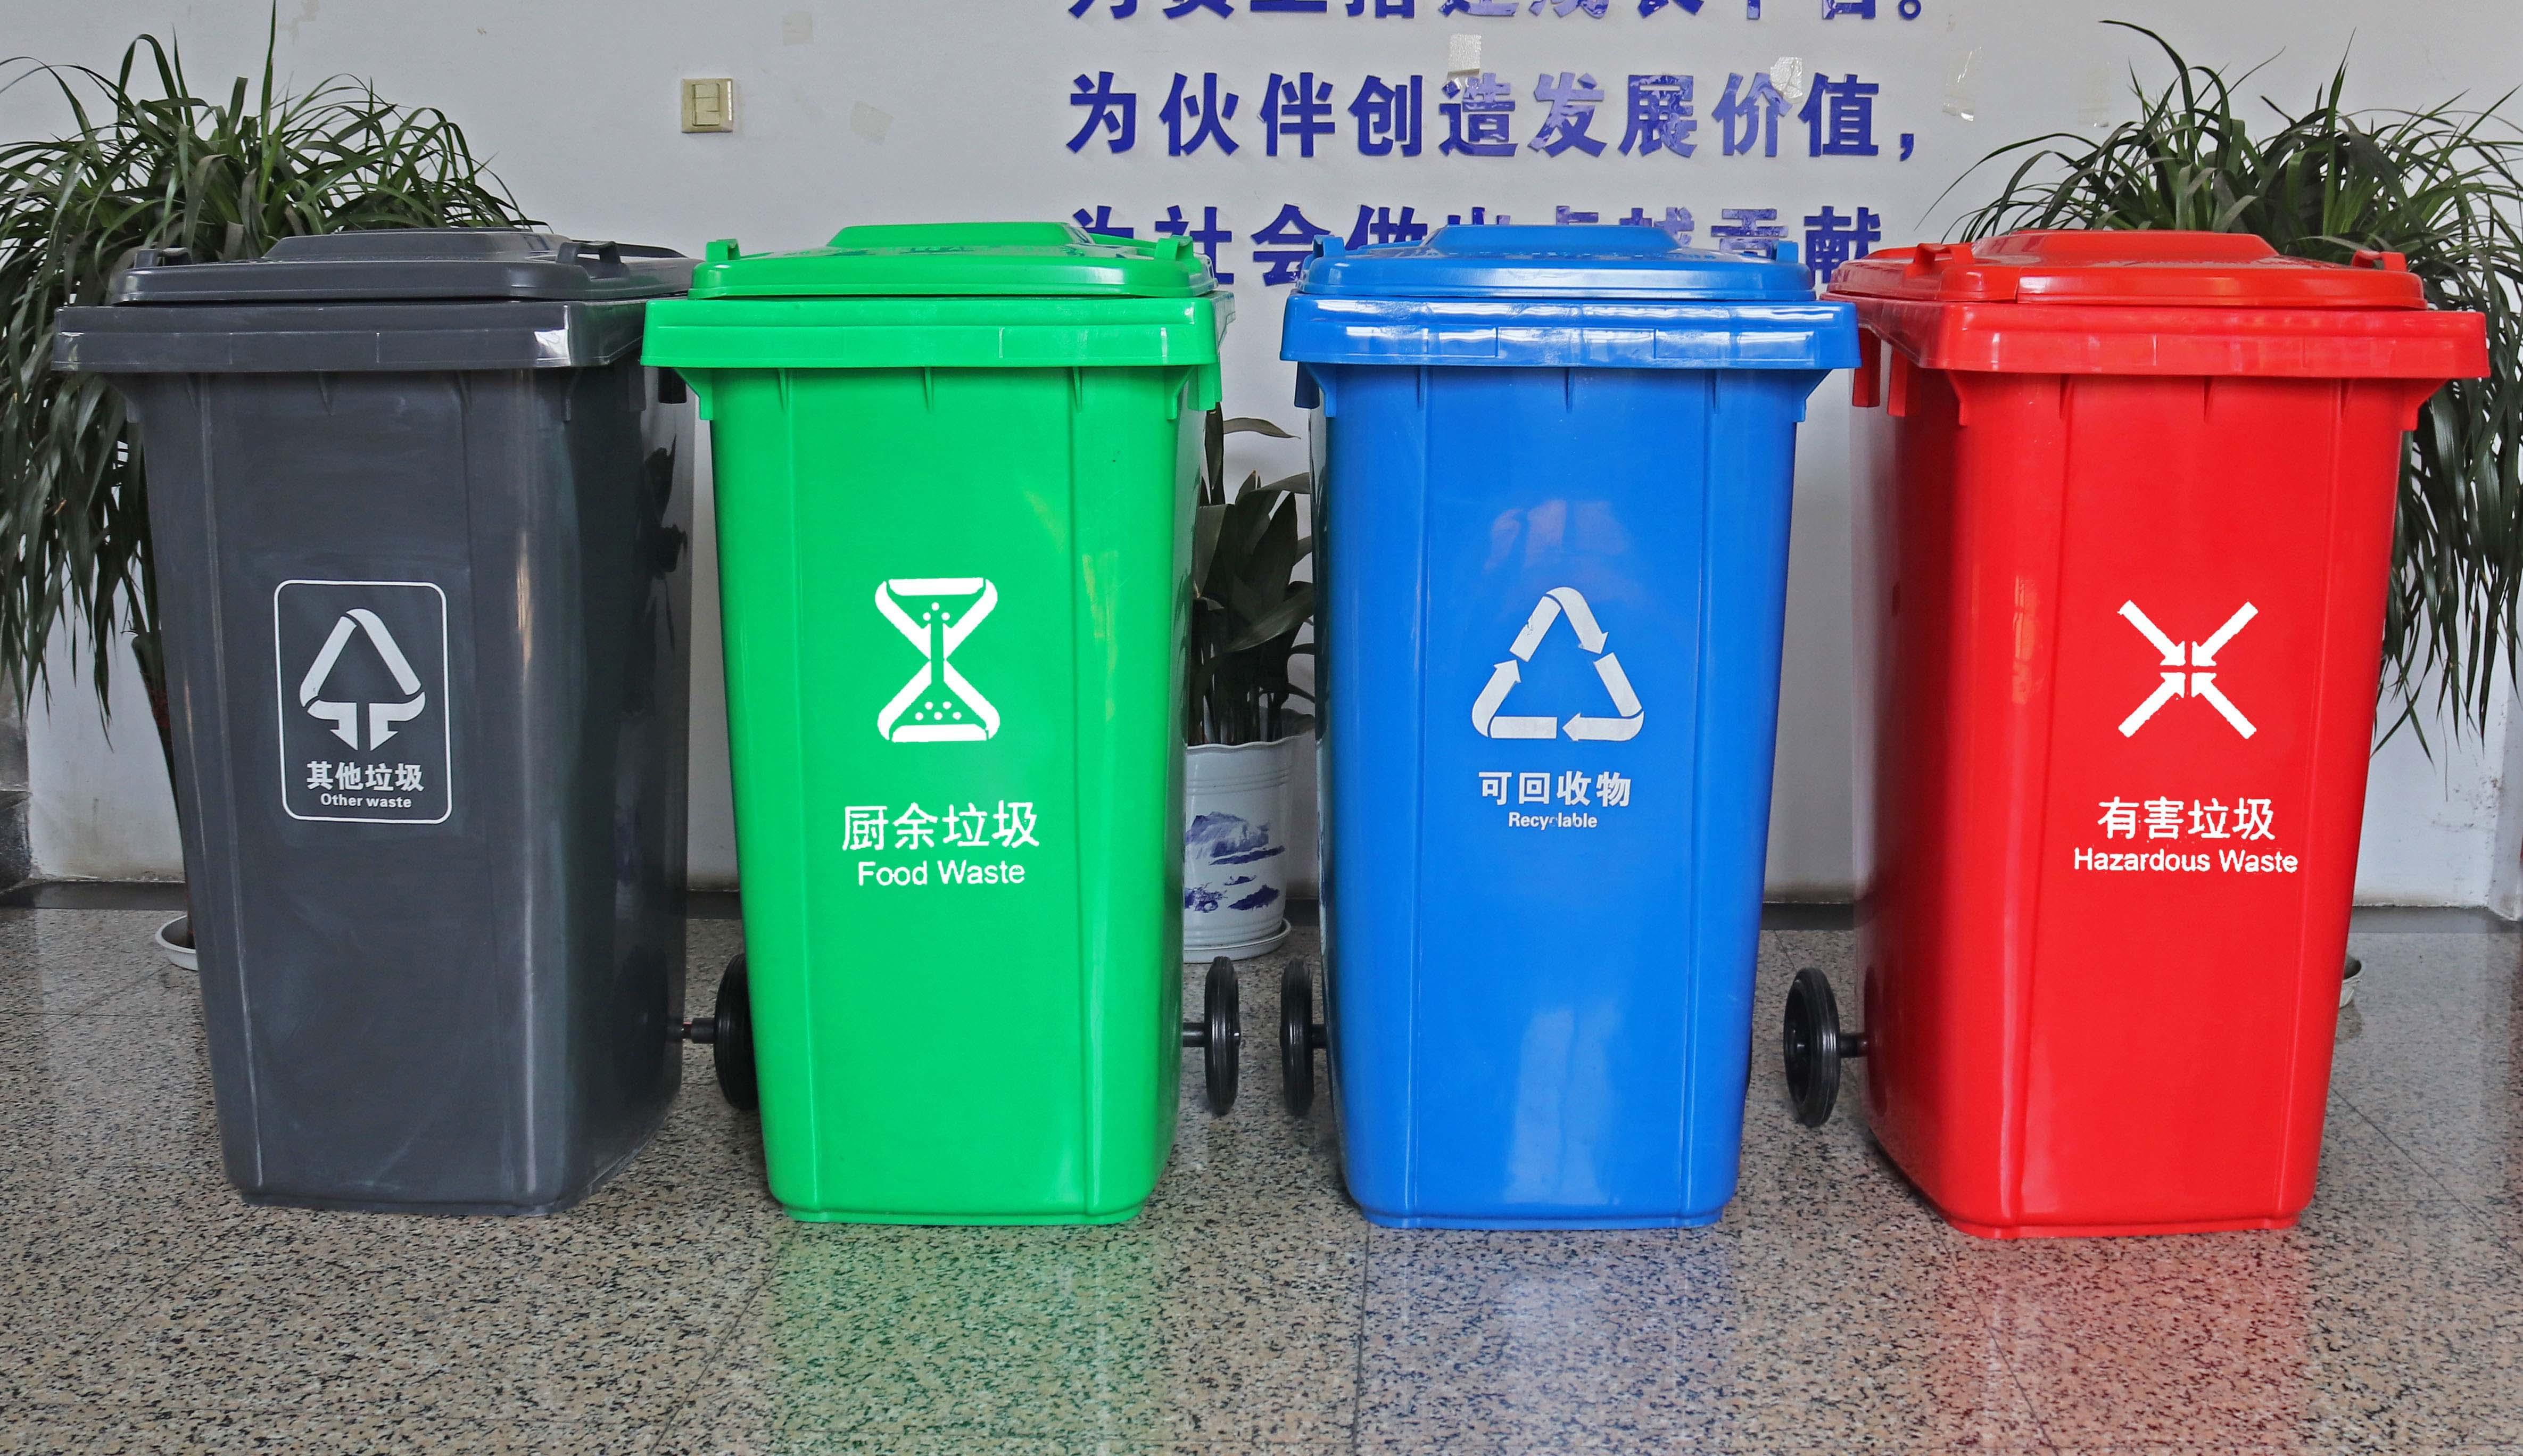 垃圾桶圖標有改動！12月1日正式實施垃圾分類新標準！